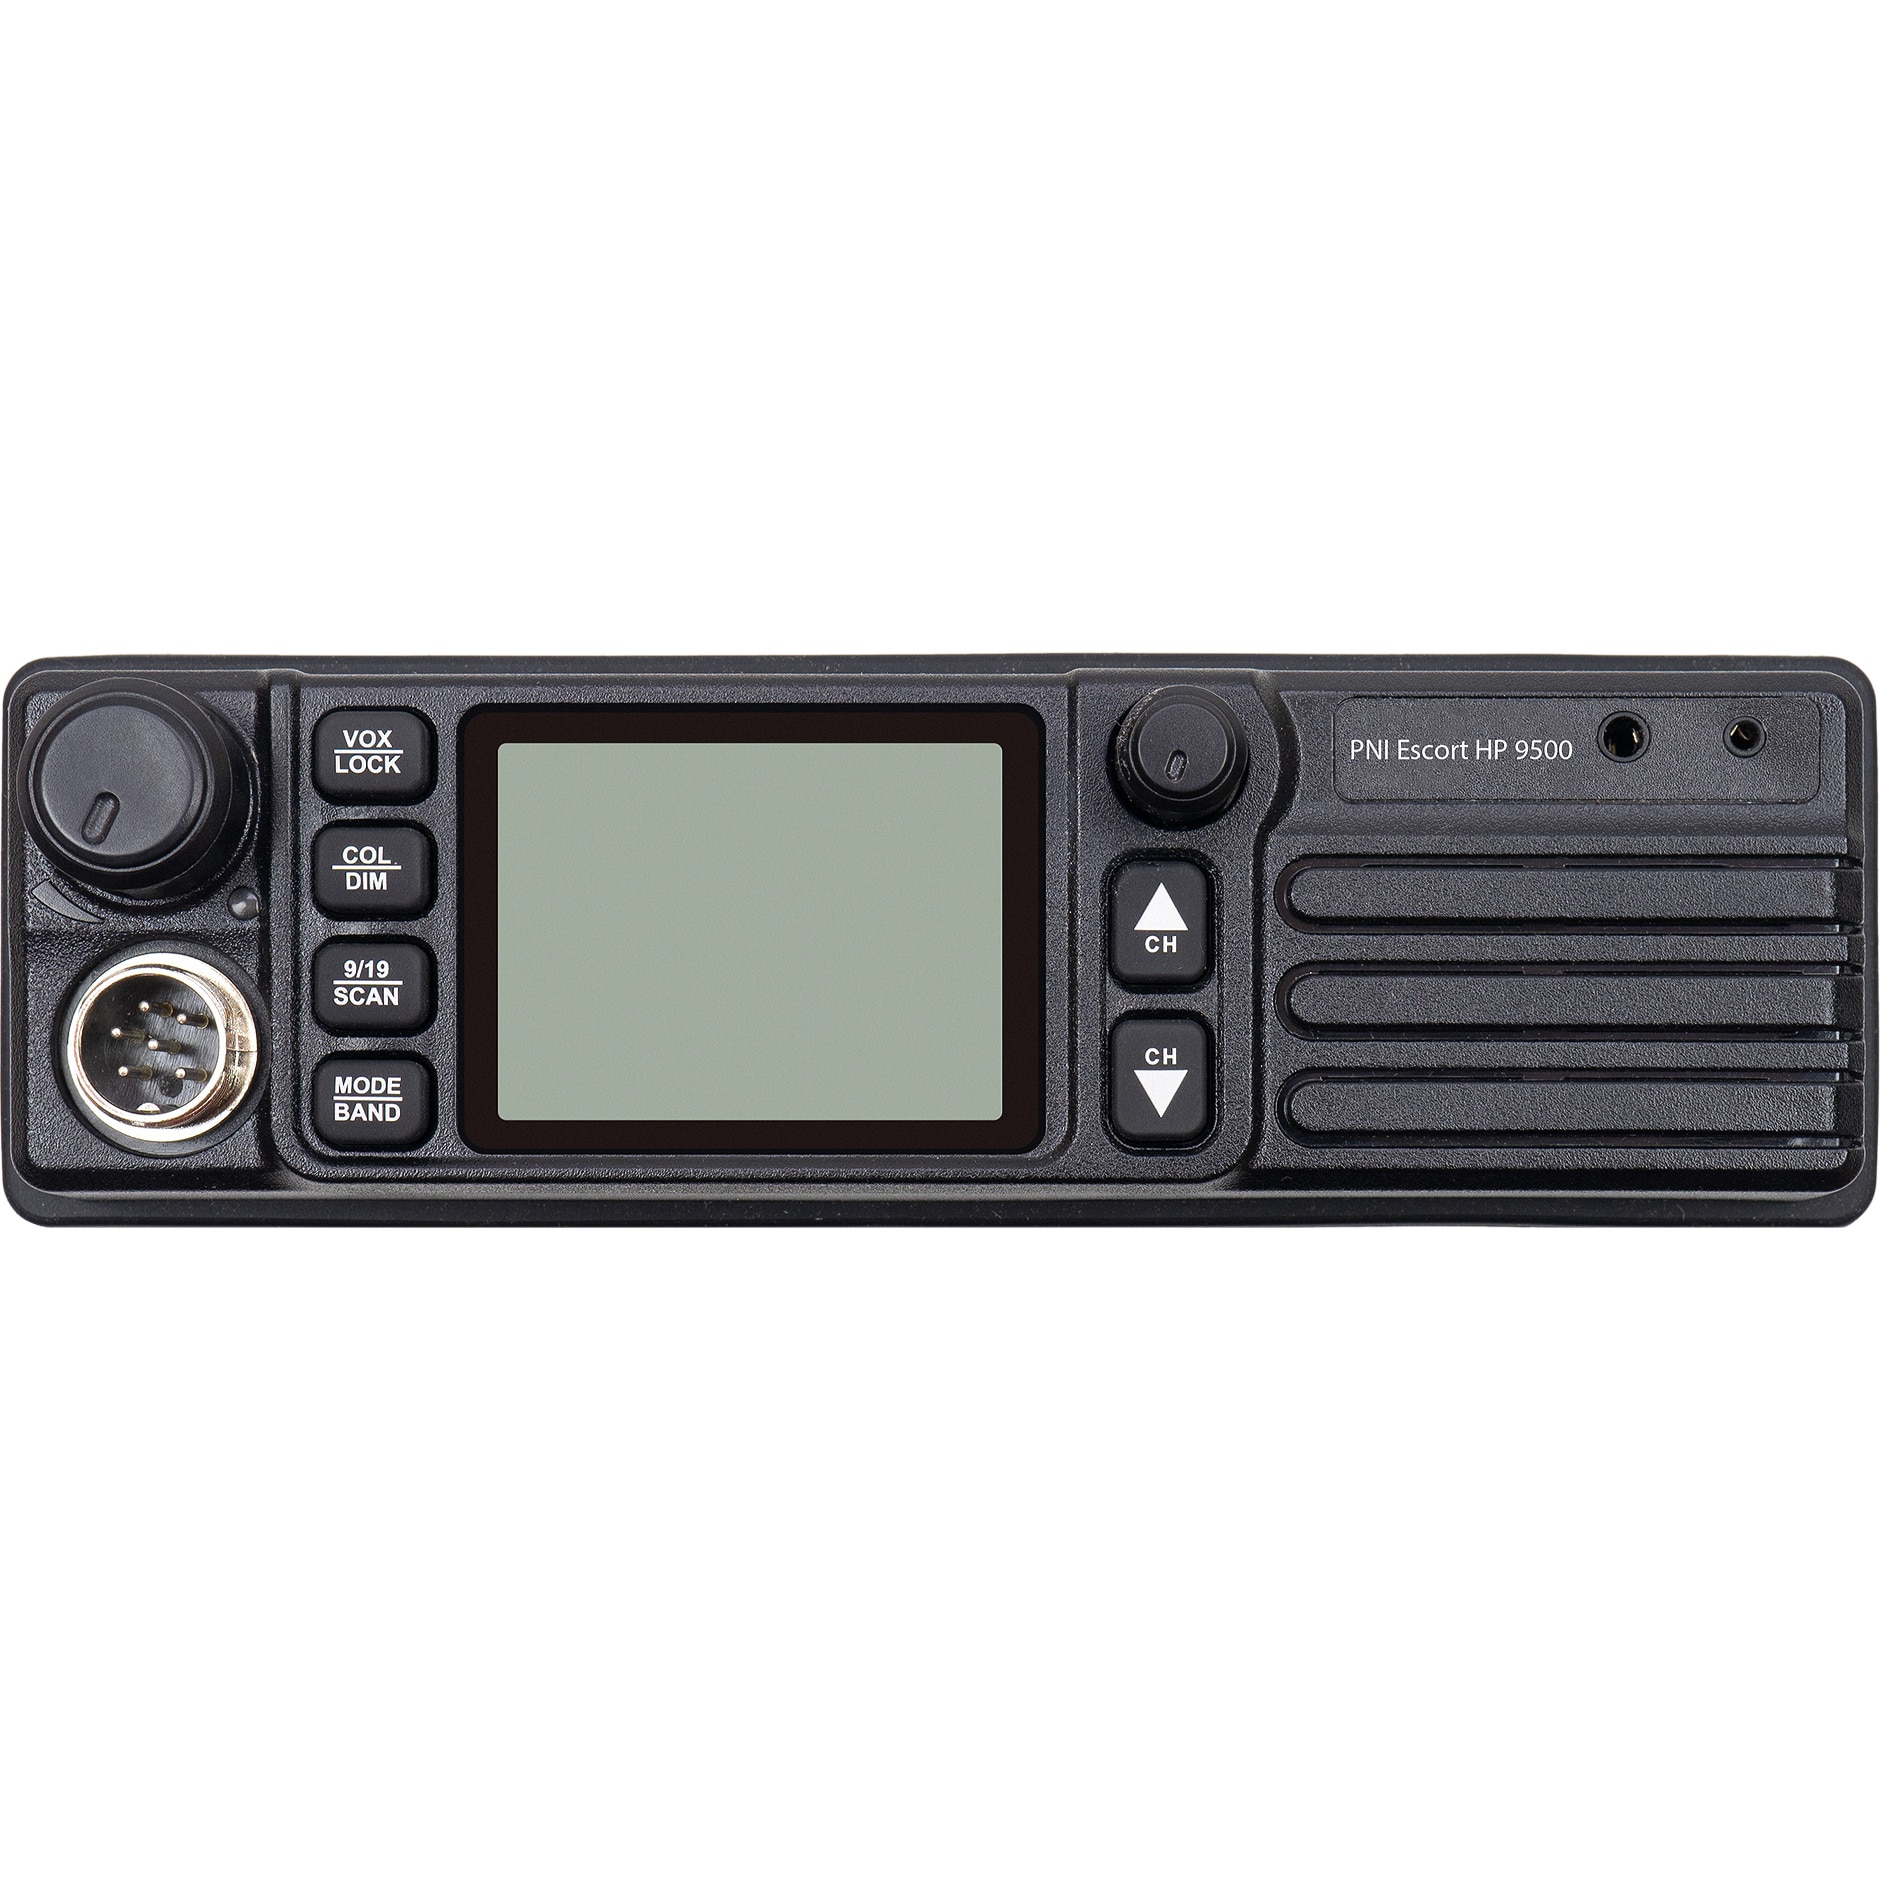 Statie radio CB PNI Escort HP 9500 multistandard, ASQ, VOX, Scan, 4W, AM-FM,  alimentare 12V/24V, mufa de bricheta inclusa